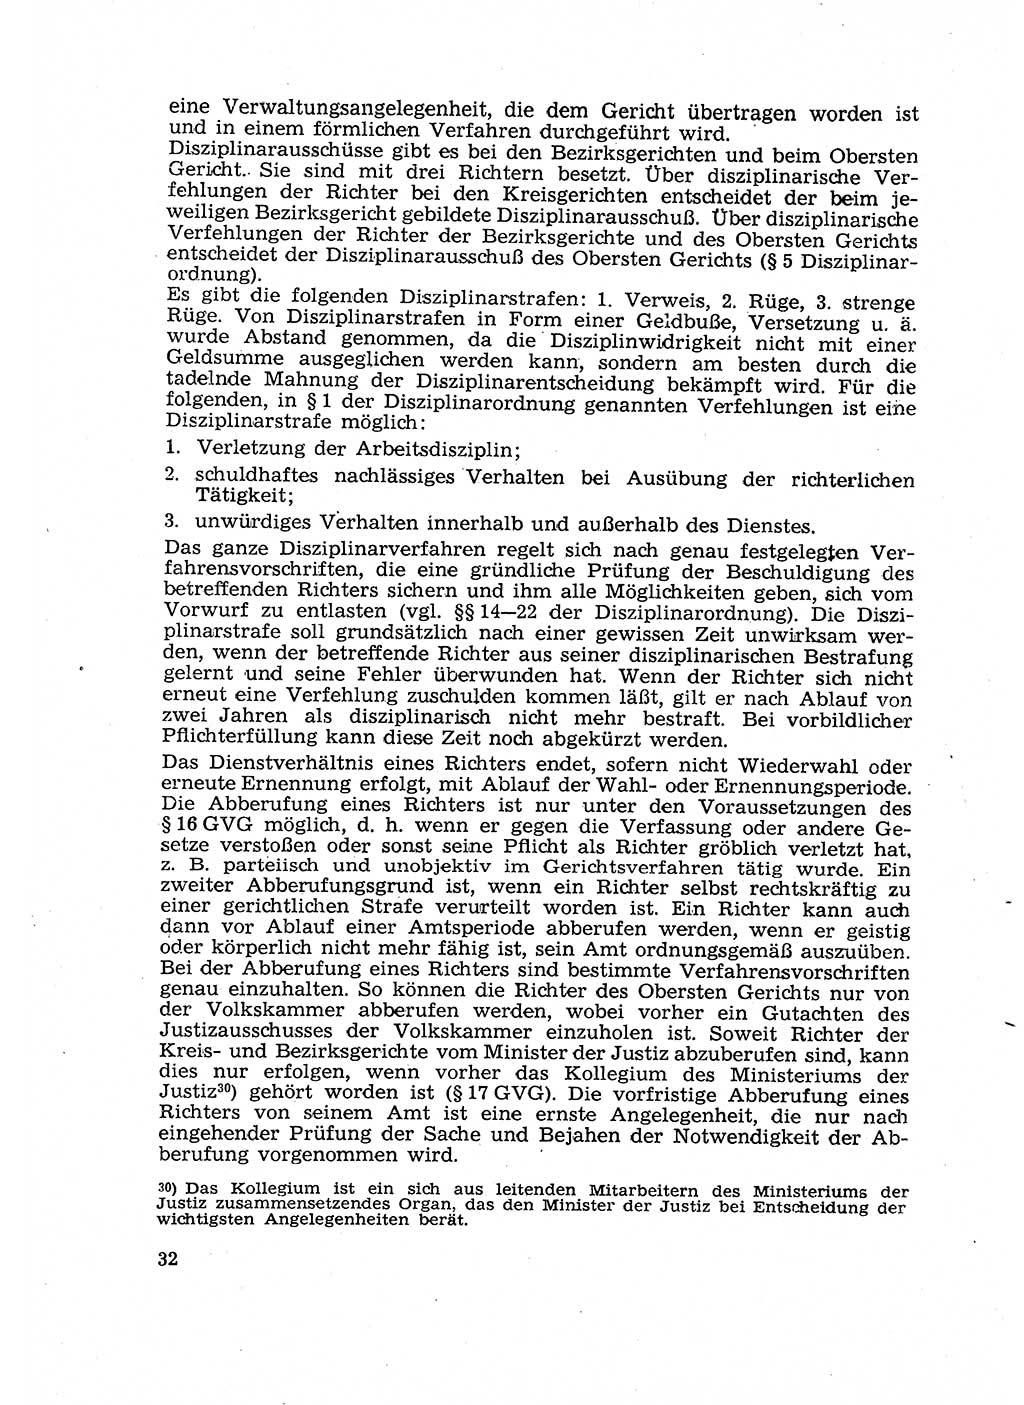 Gericht und Rechtsprechung in der Deutschen Demokratischen Republik (DDR) 1956, Seite 32 (Ger. Rechtspr. DDR 1956, S. 32)